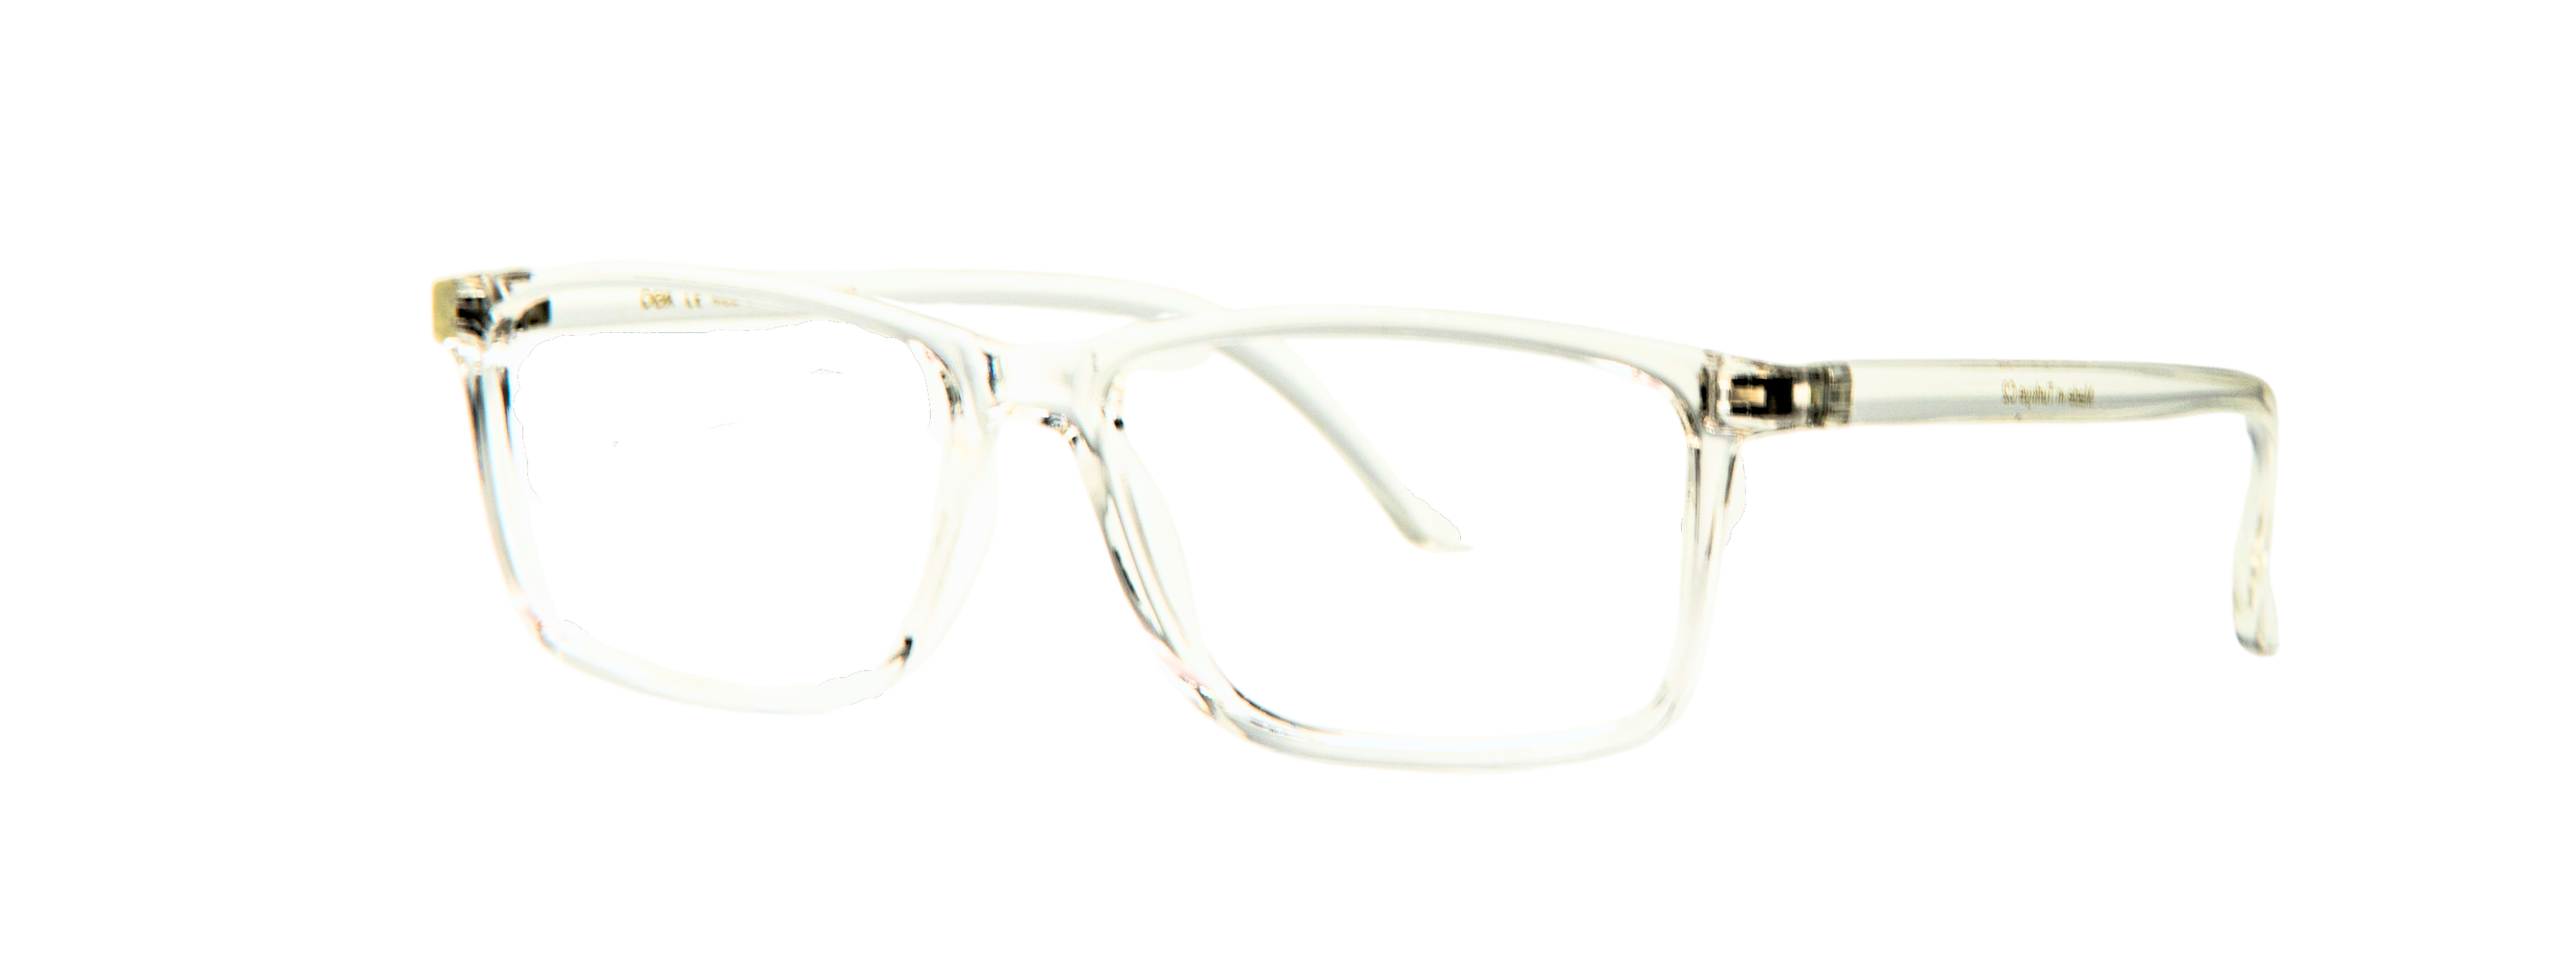  || Anatolia Ventures Optik | Erkek Gözlüğü Üretim, Kadın Gözlüğü Üretim, Çocuk Gözlüğü Üretim, Kolej Gözlüğü Üretim, Okuma Gözlüğü Üretim, Unisex Gözlüğü Üretim, Güneş Gözlüğü Üretim , Köprül Gözlüğü Üretim,  Erkek Gözlüğü, Kadın Gözlüğü, Çocuk Gözlüğü, Kolej Gözlüğü, Okuma Gözlüğü, Unisex Gözlüğü, Güneş Gözlüğü, Frenk Gözlüğü, Frenk Metal Gözlüğü, Frenk Okuma Gözlüğü, Frenk Güneş Gözlüğü, Köprül Gözlüğü